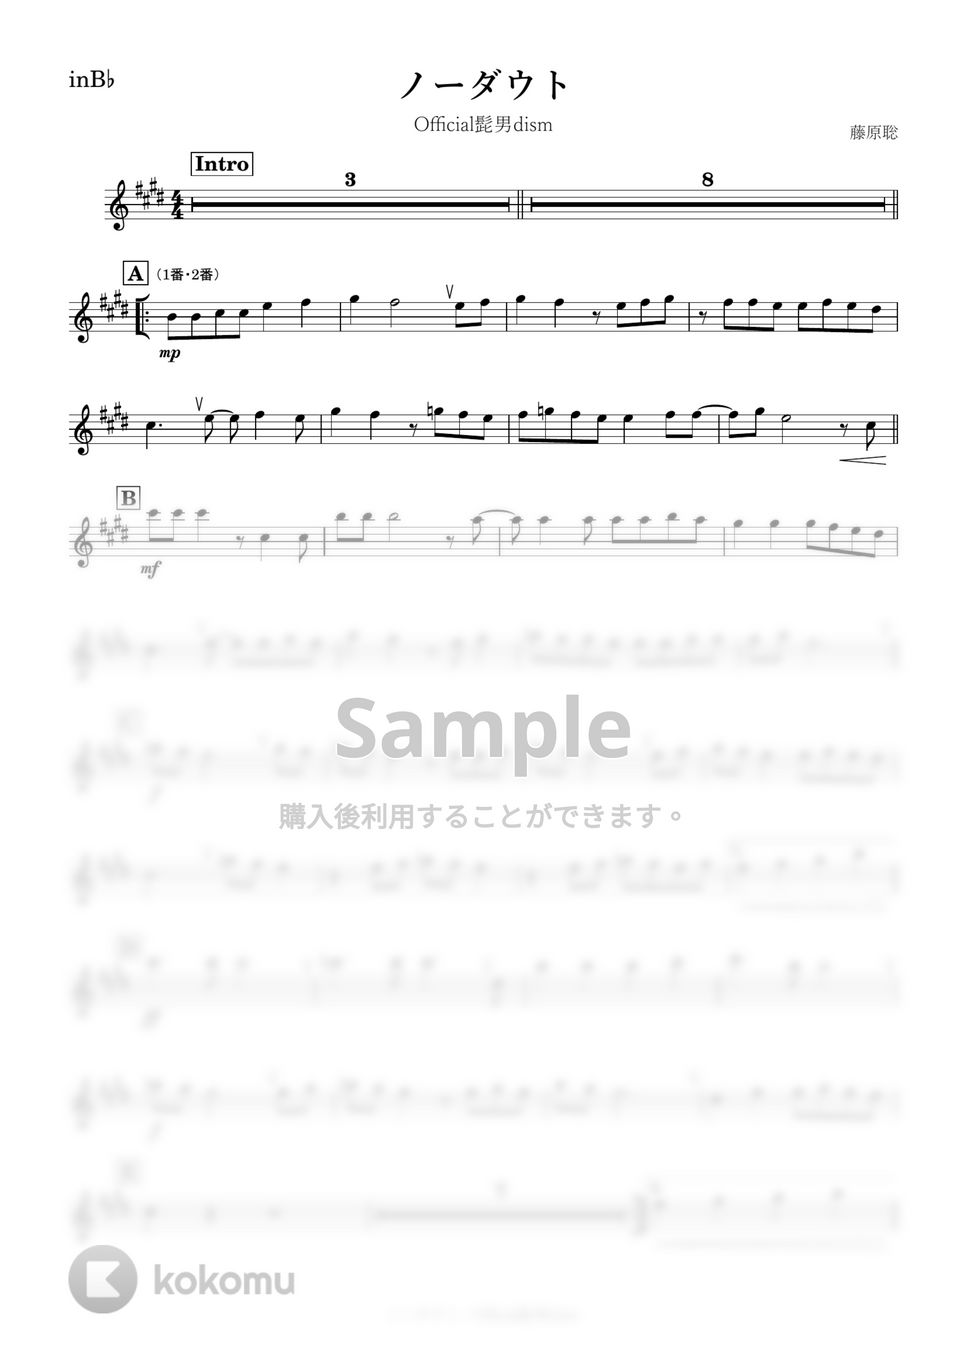 Official髭男dism - ノーダウト (B♭) by kanamusic